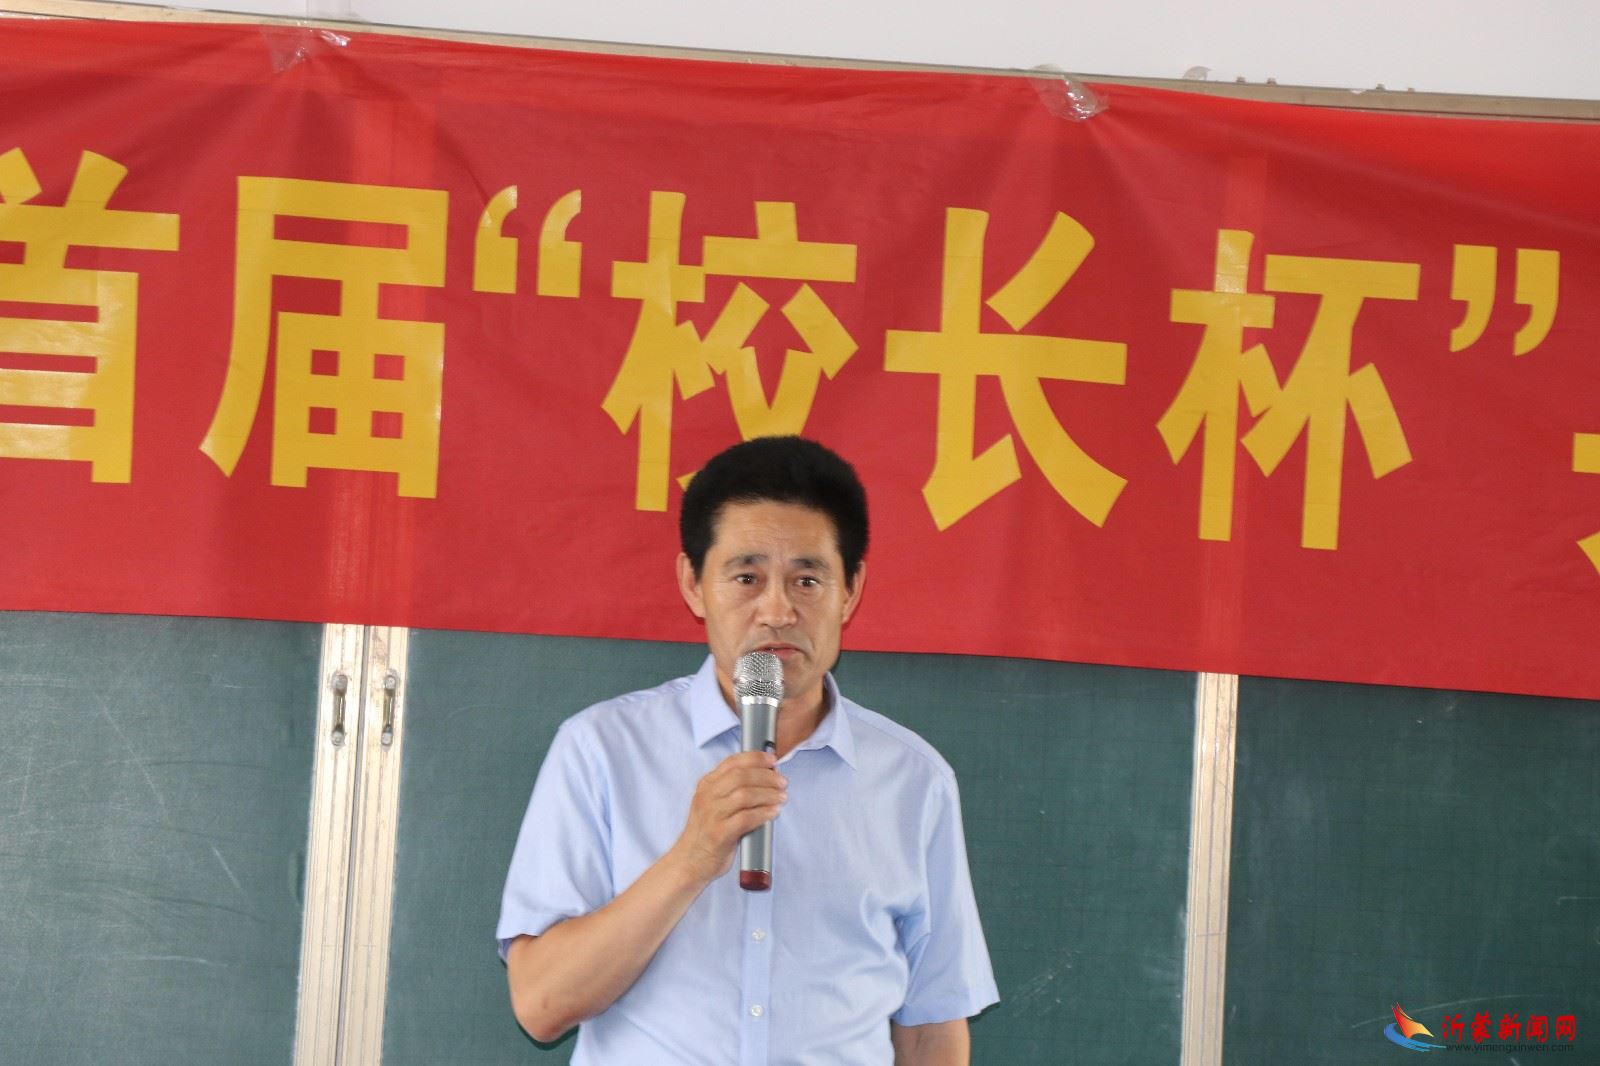 临沂新桥小学举行首届“校长杯“乒乓球比赛